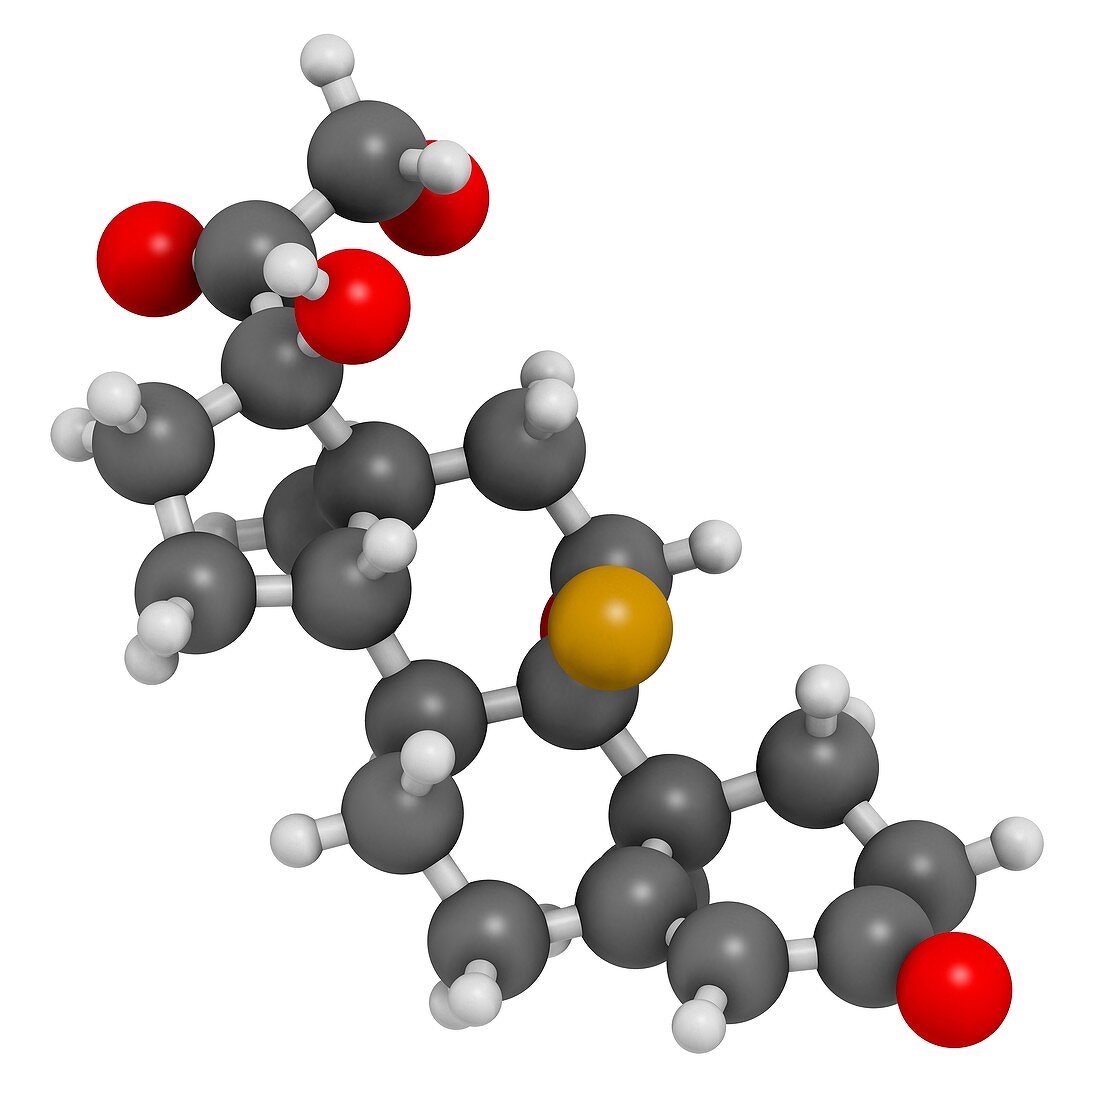 Aldosterone hormone substitution drug